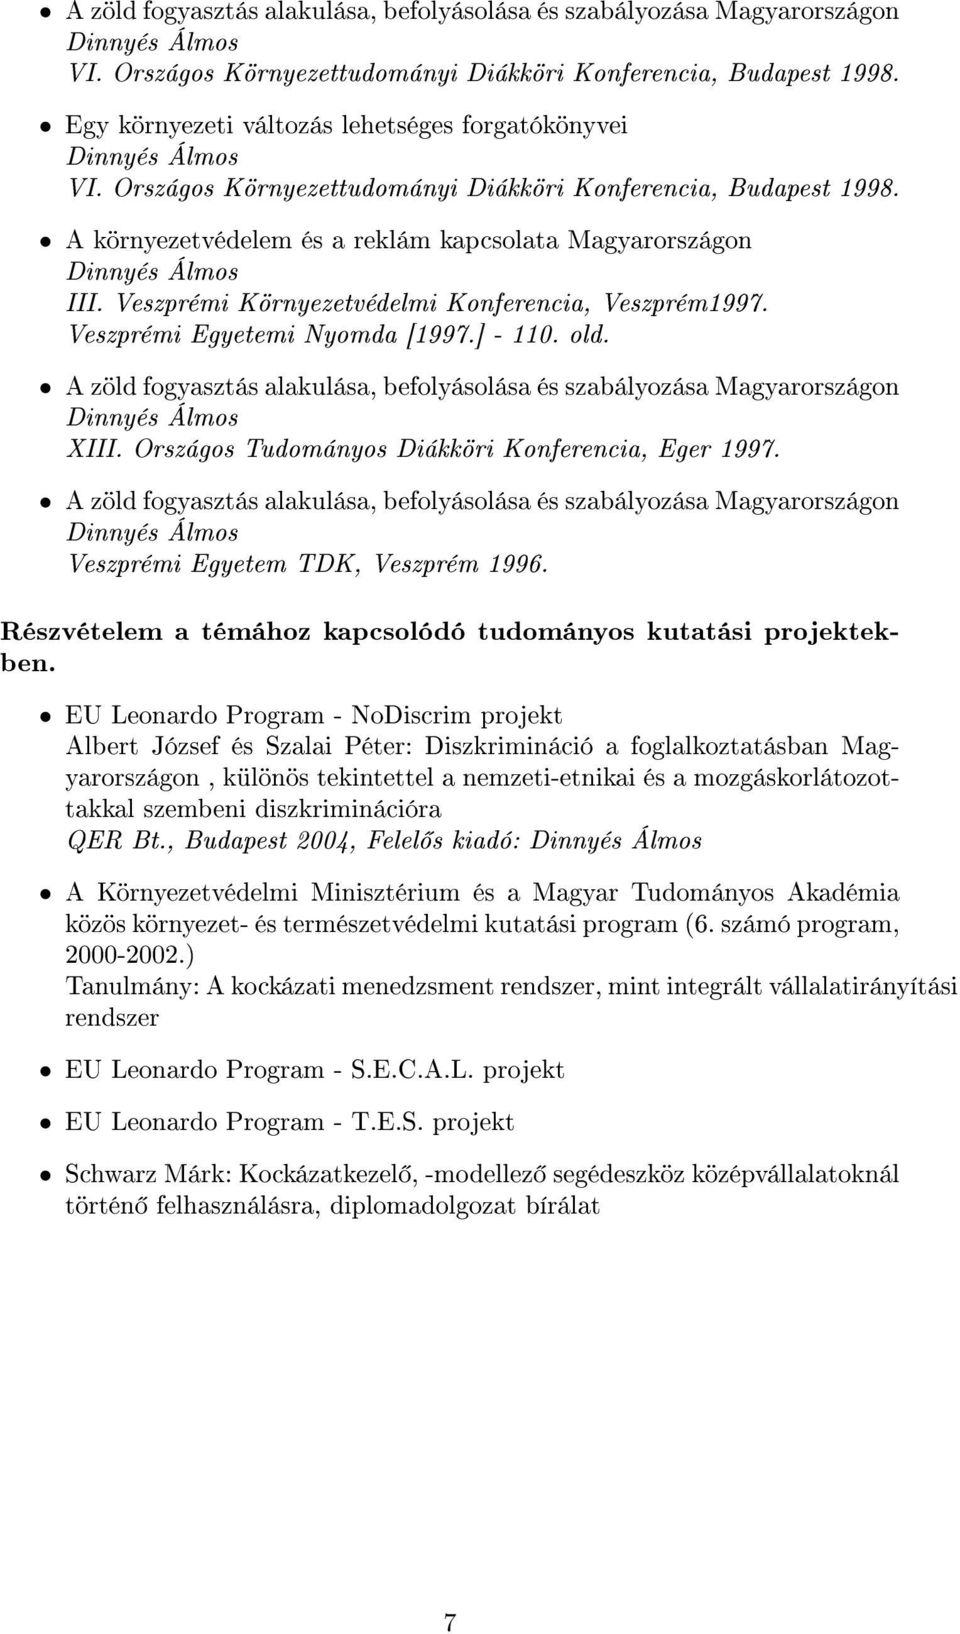 Veszprémi Egyetemi Nyomda [1997.] - 110. old. A zöld fogyasztás alakulása, befolyásolása és szabályozása Magyarországon XIII. Országos Tudományos Diákköri Konferencia, Eger 1997.